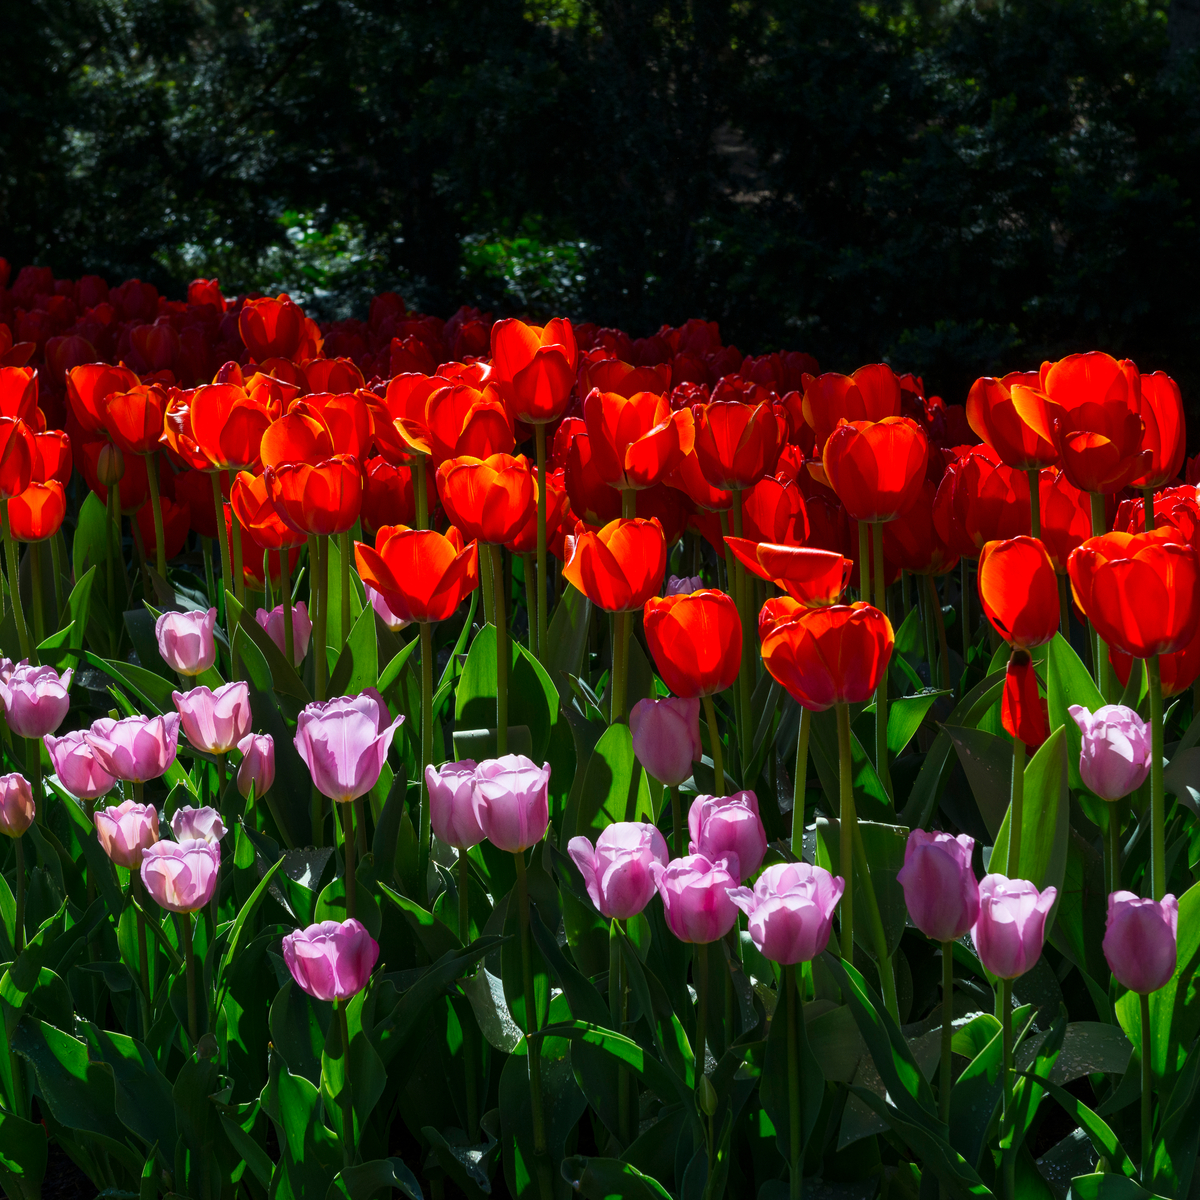 Los 8 mejores festivales de tulipán en los EE. UU. - 15